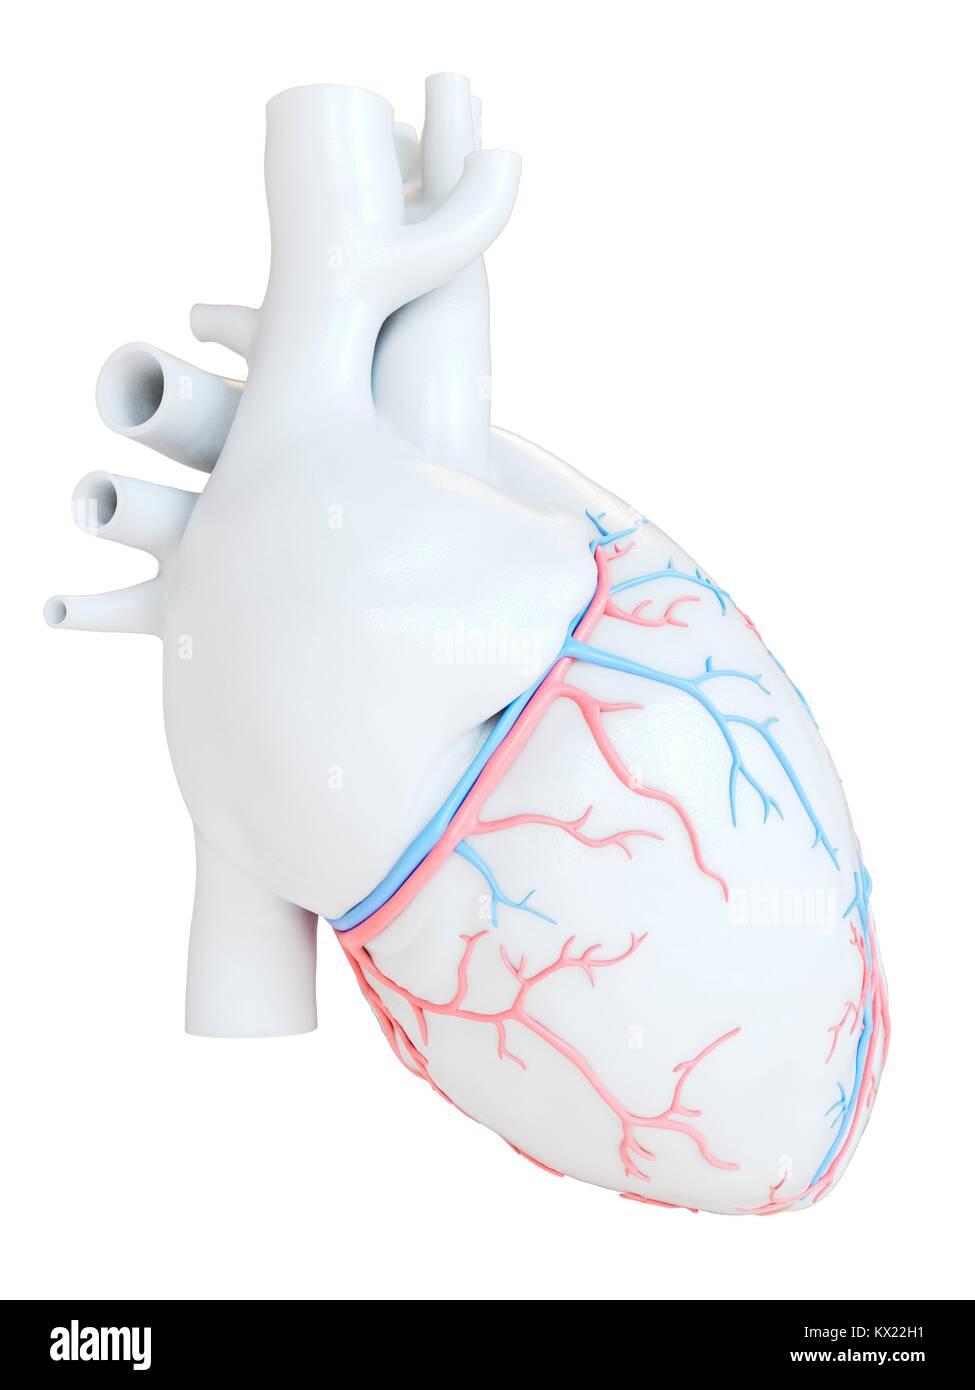 Coeur de l'homme avec les vaisseaux coronaires, illustration. Banque D'Images